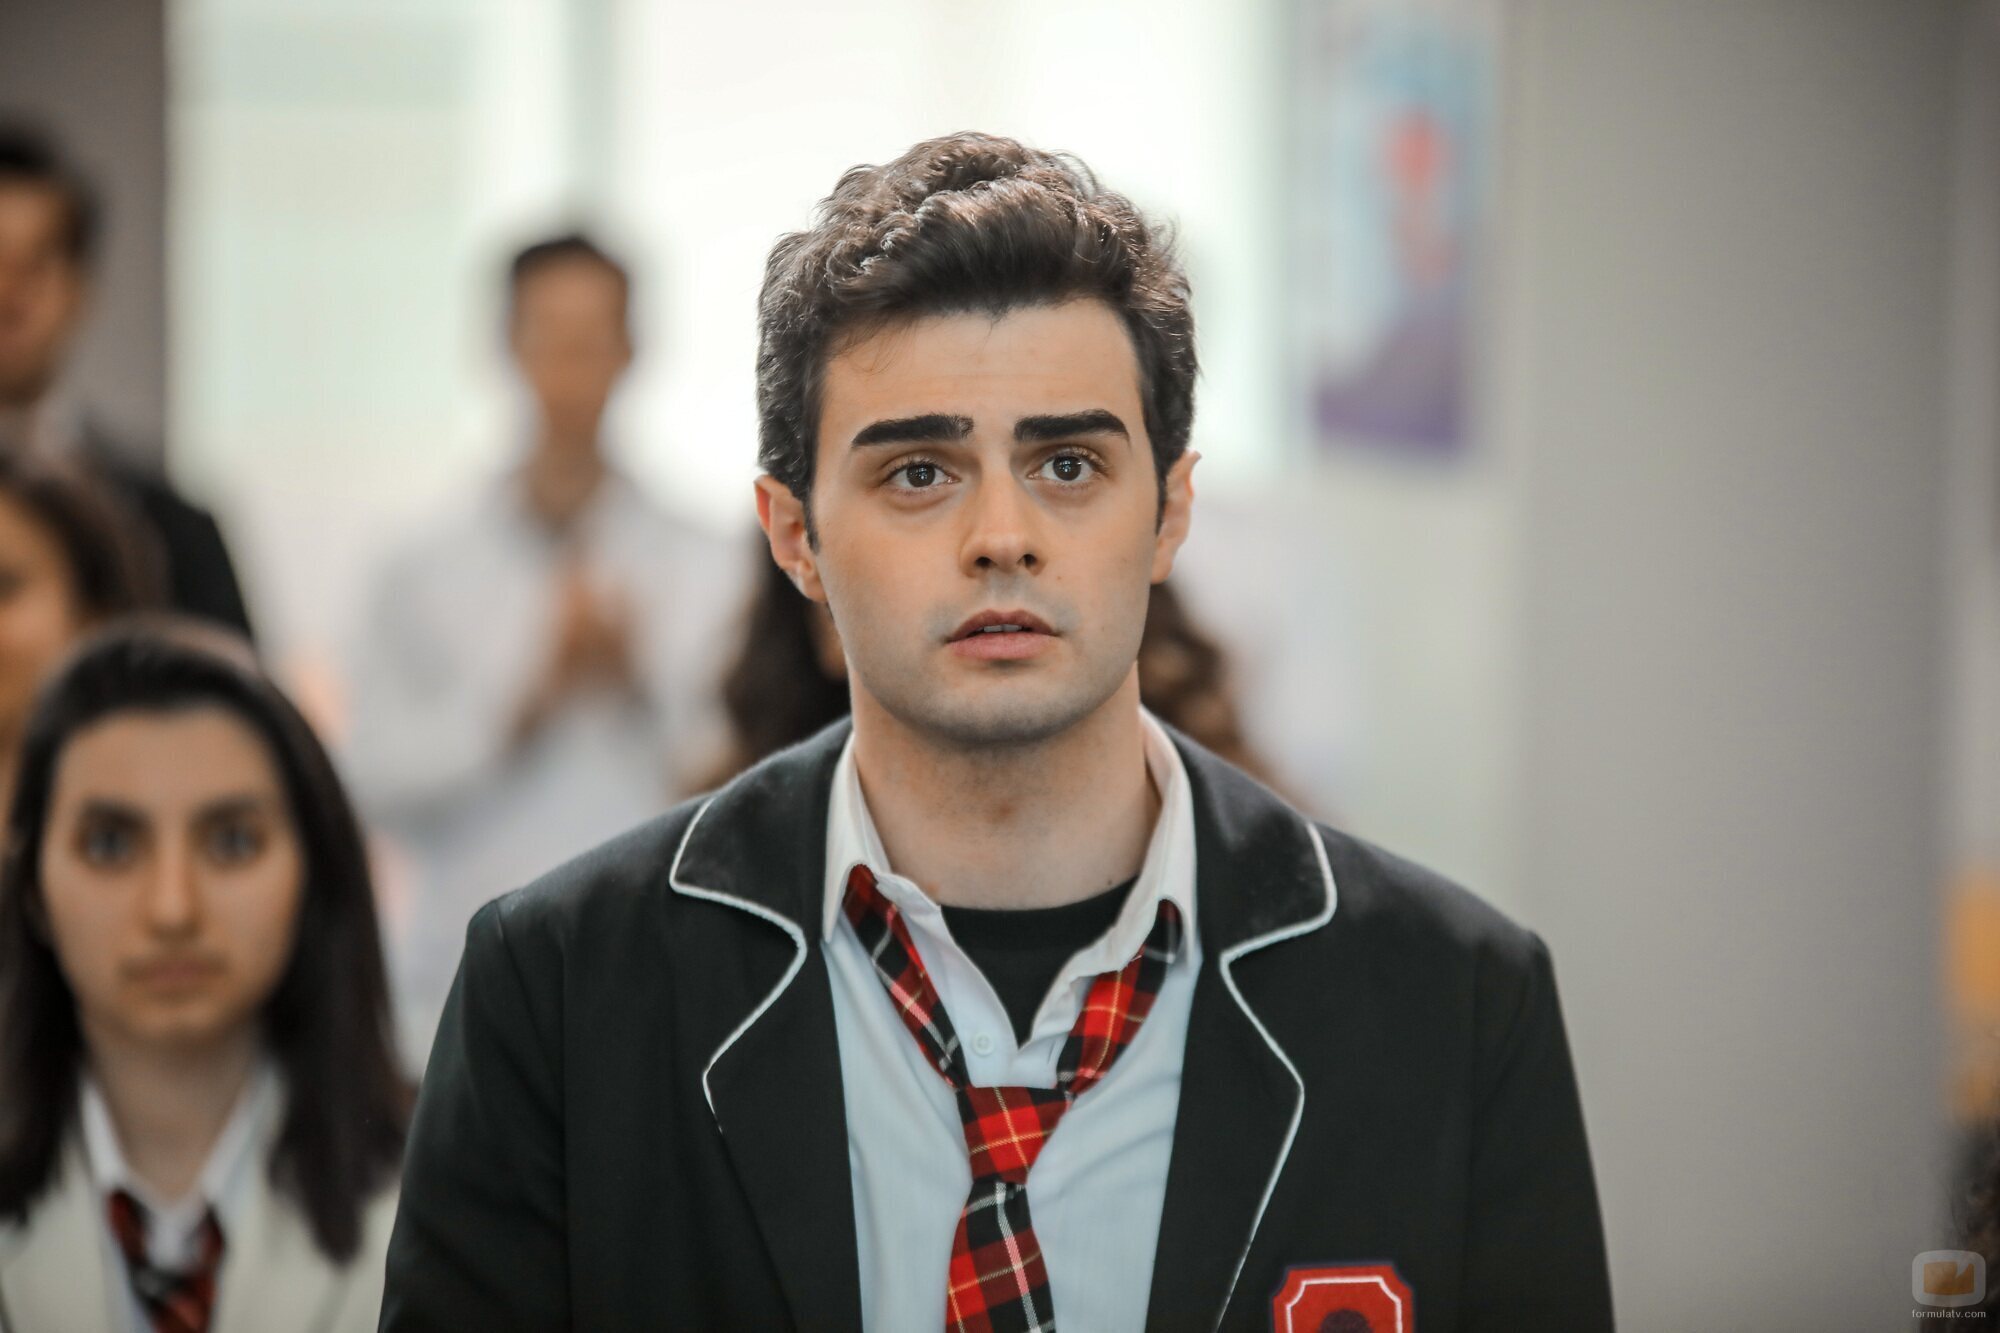 Ygit Koçak es Omer Eren en 'Hermanos', la serie de Antena 3